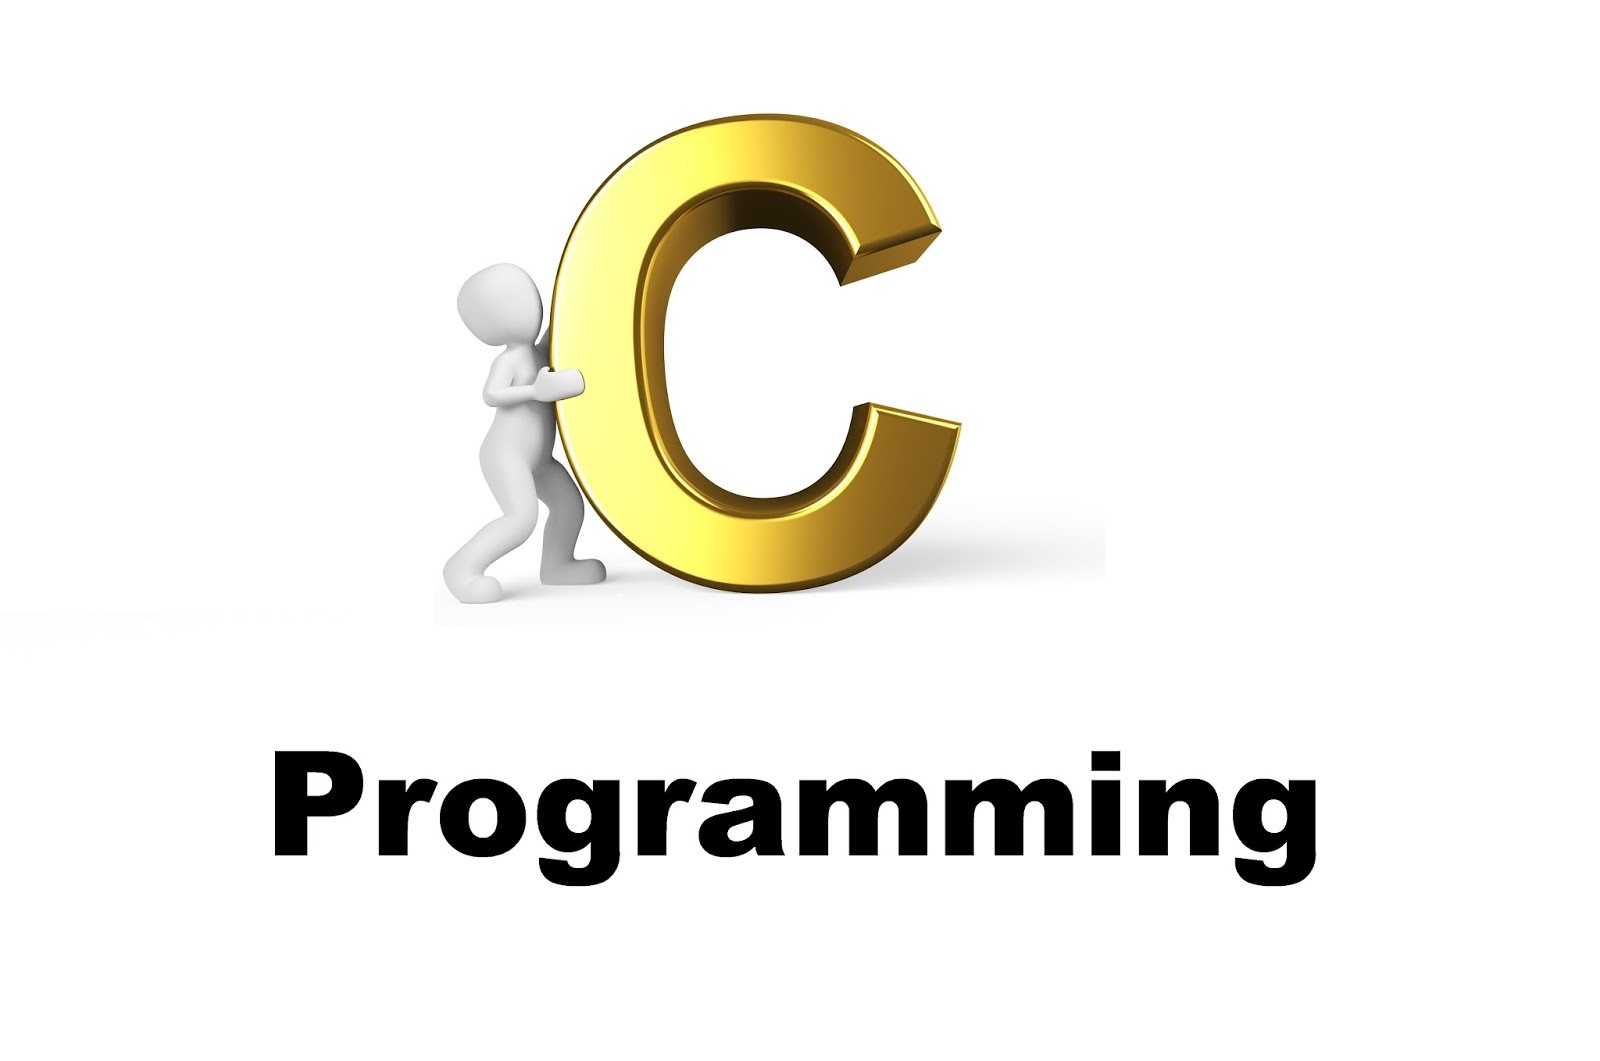 Изучать язык c. Си (язык программирования). C язык программирования картинки. Язык си логотип. Языки программирования логотипы.